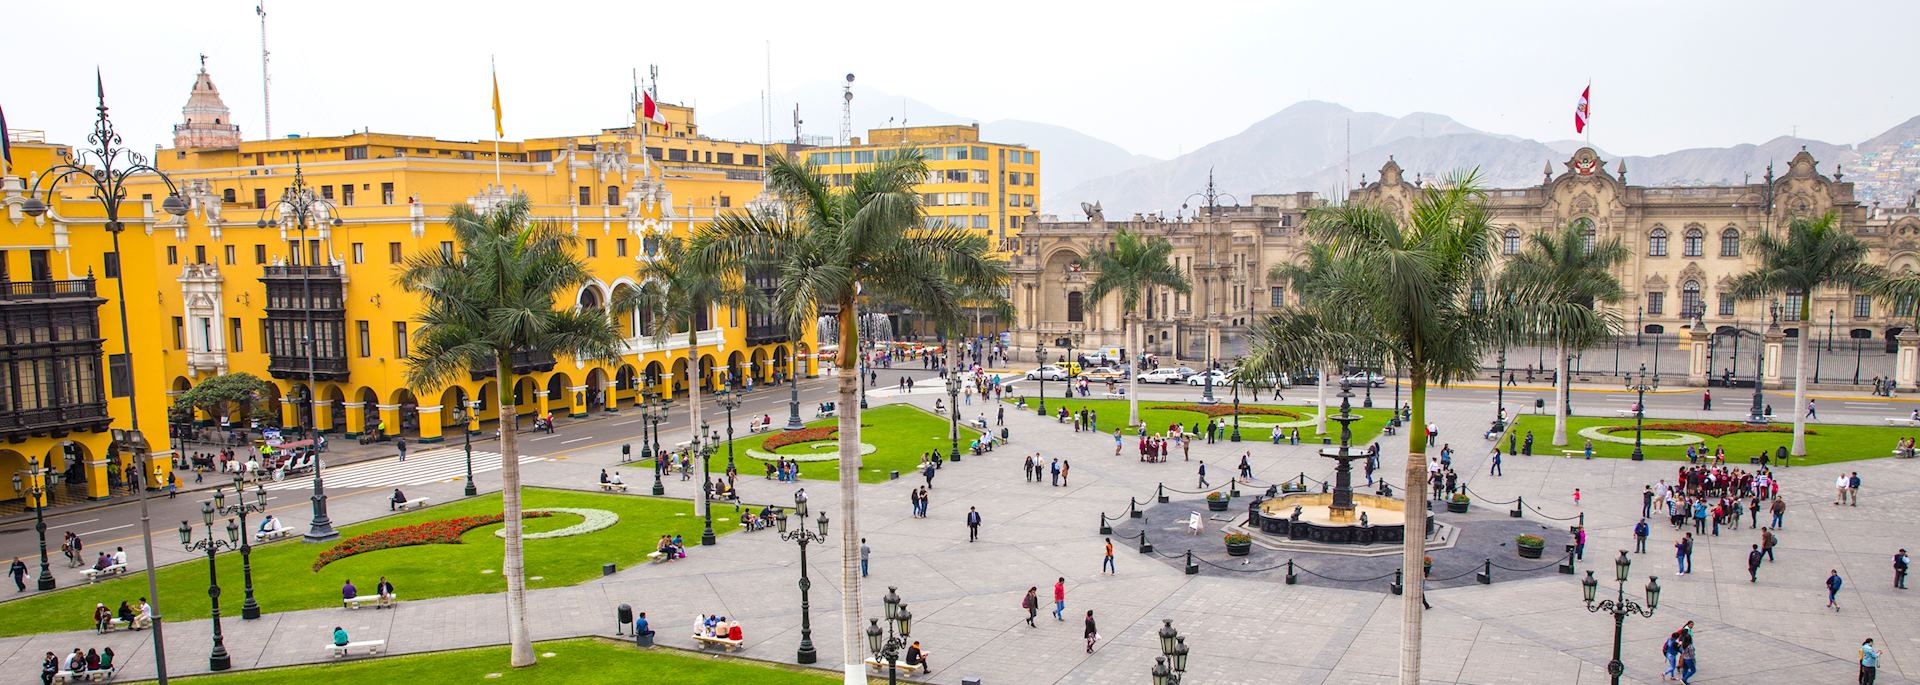 Plaza de Armas, Lima, Peru